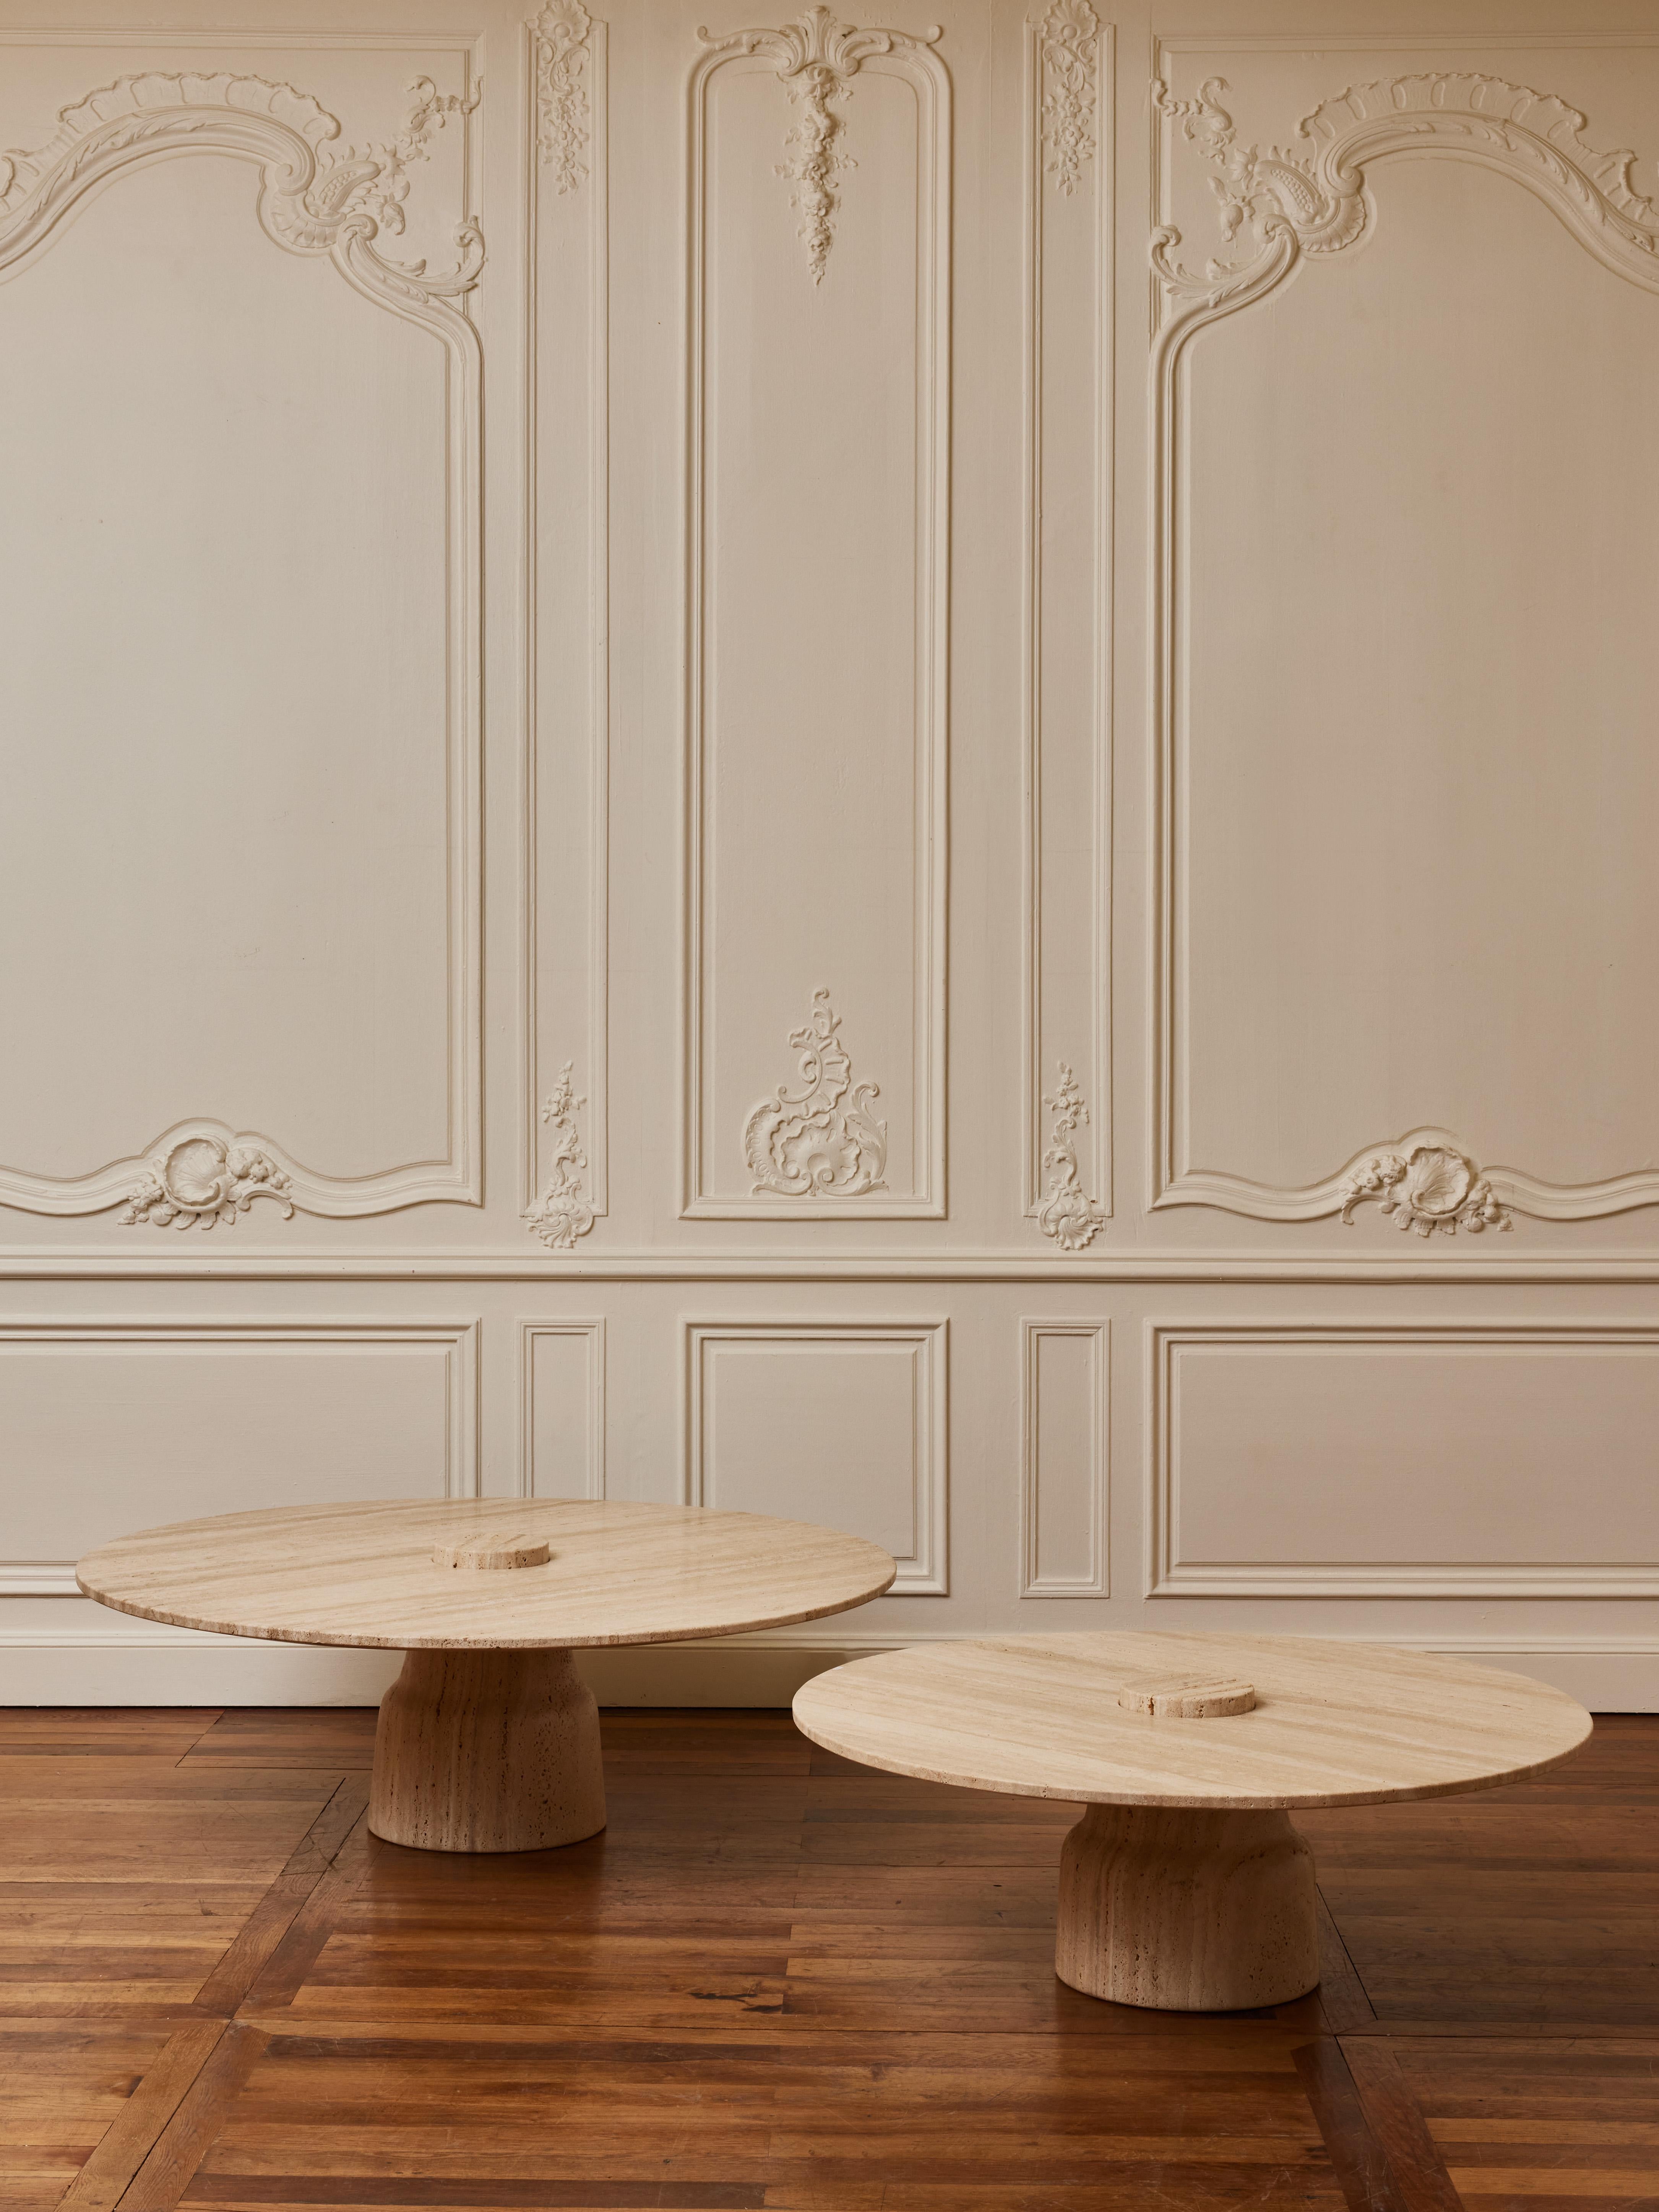 Paire de tables basses en pierre massive de travertin.
Création par le Studio Glustin.
Italie, 2023.

Dimensions :
Diam 100 x H 34 cm
Diam 120 x H 39 cm